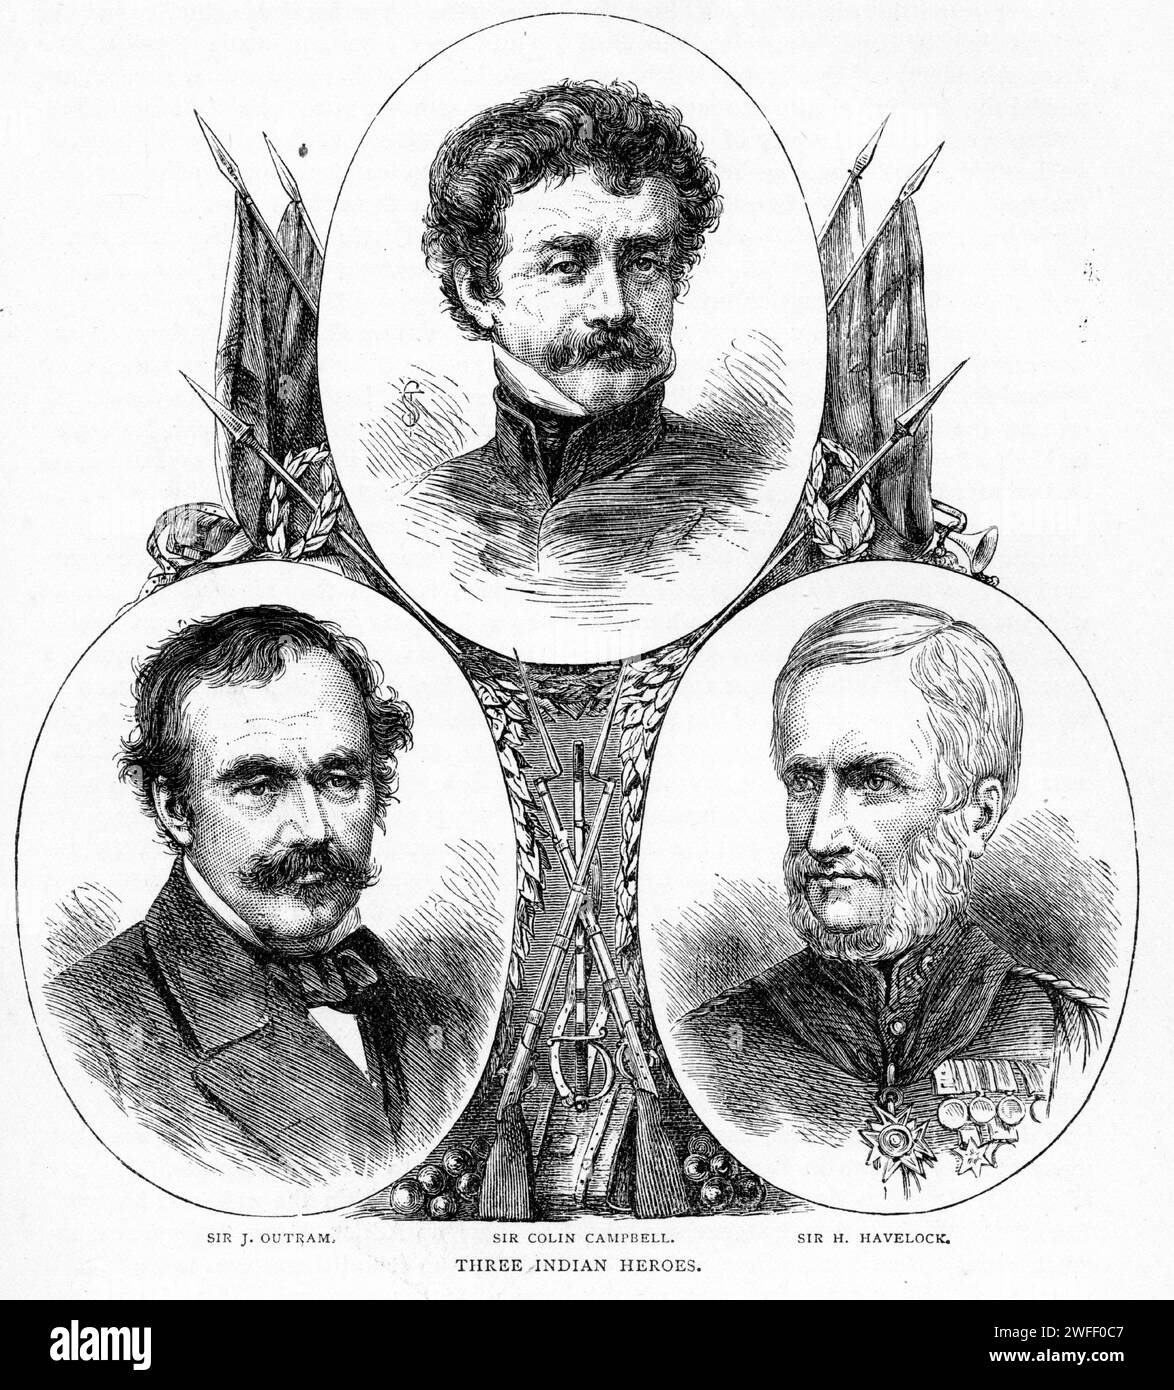 Portrait de trois héros britanniques qui se sont distingués en Inde - Sir James Outram, Sir Colin Campbell et Sir Henry Havelock. Publié circa 1880 Banque D'Images